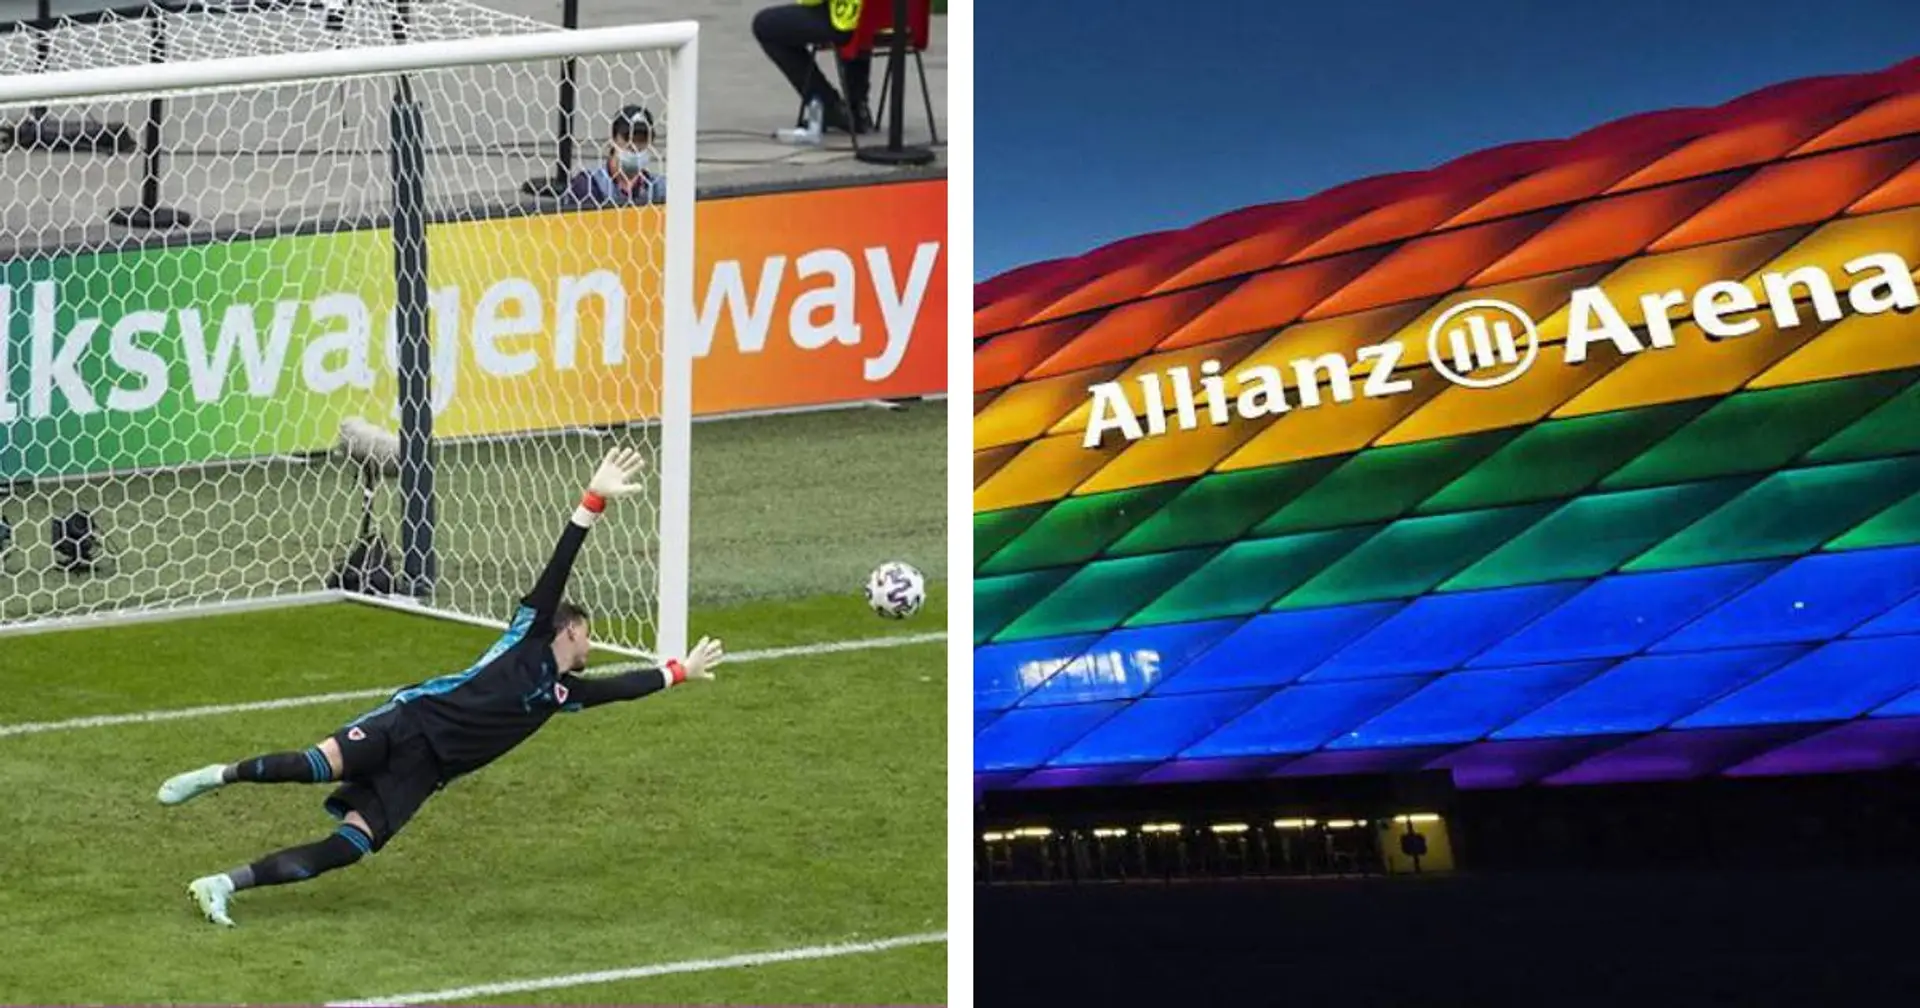 Warum erlaubt die UEFA bunte Werbung in EM-Stadien und verbietet Regenbogen-Beleuchtung der Allianz Arena?